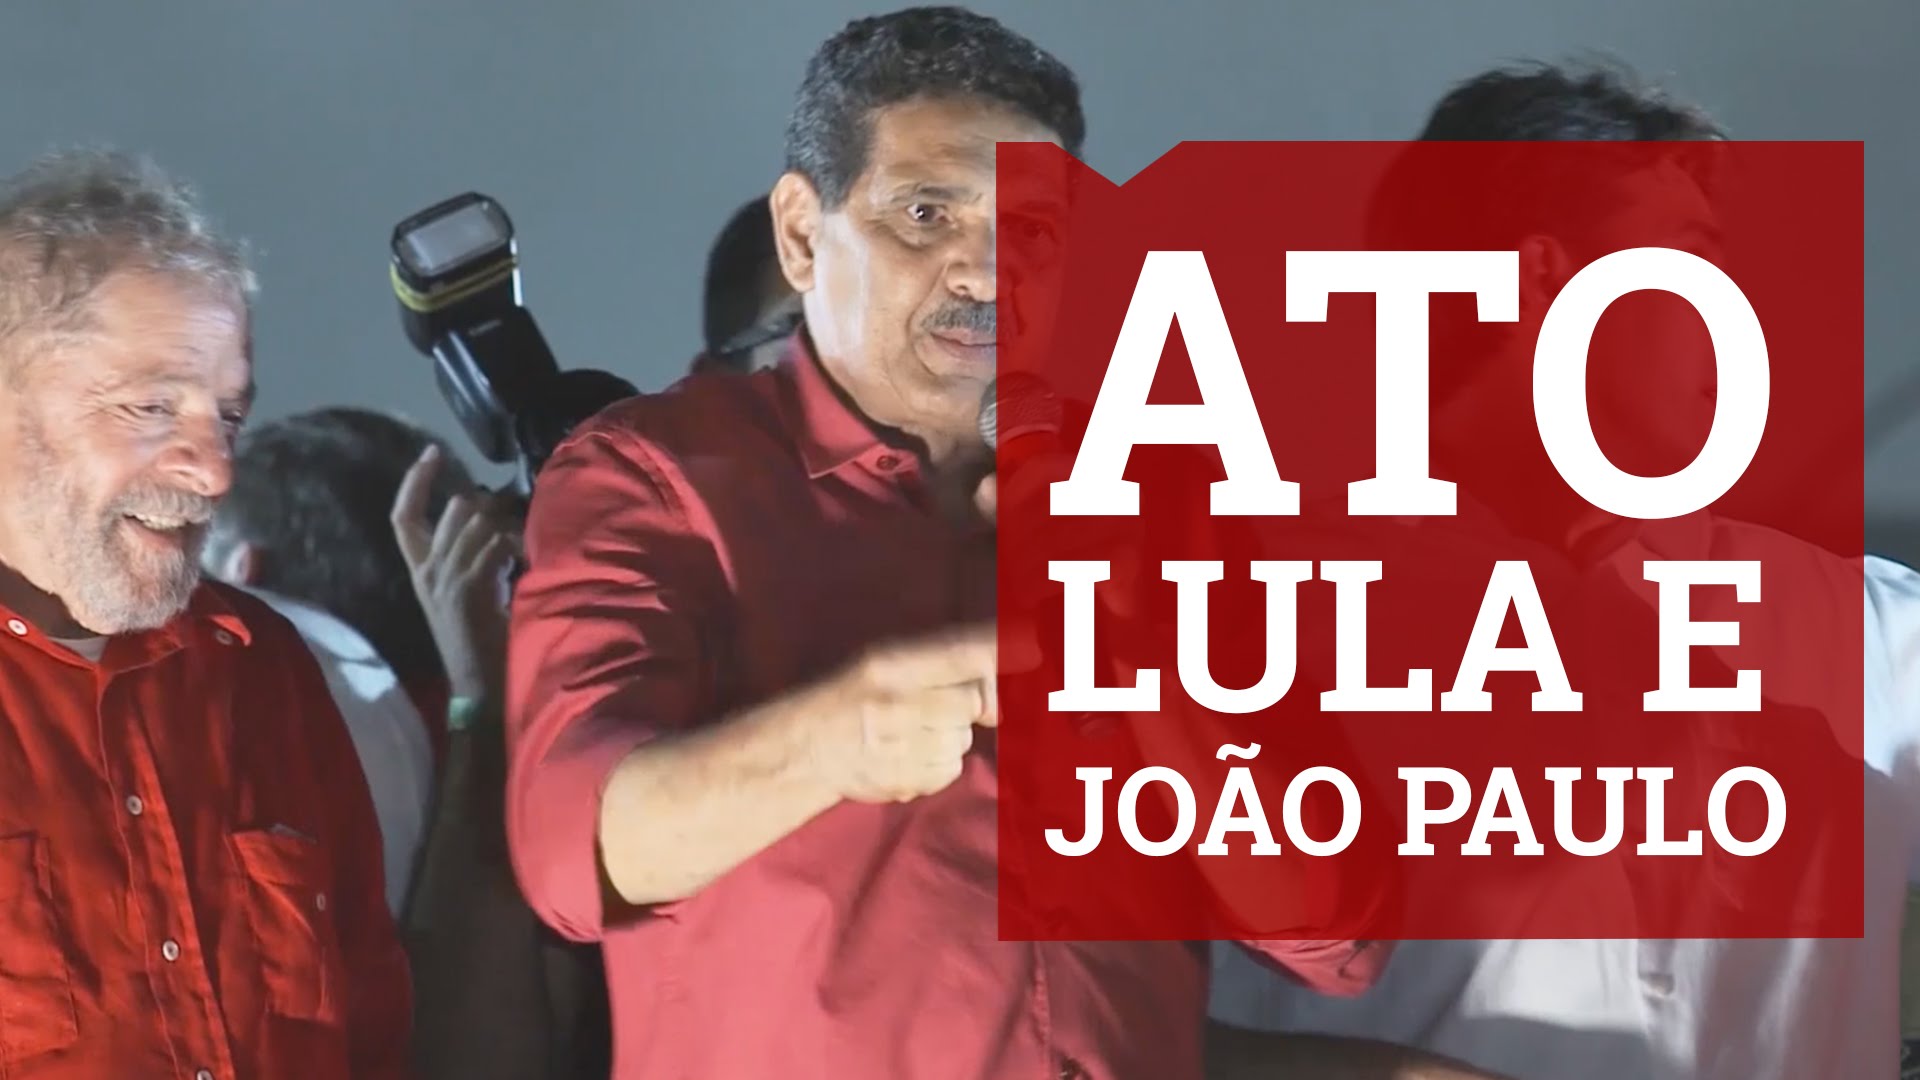 Lula e João Paulo no Recife